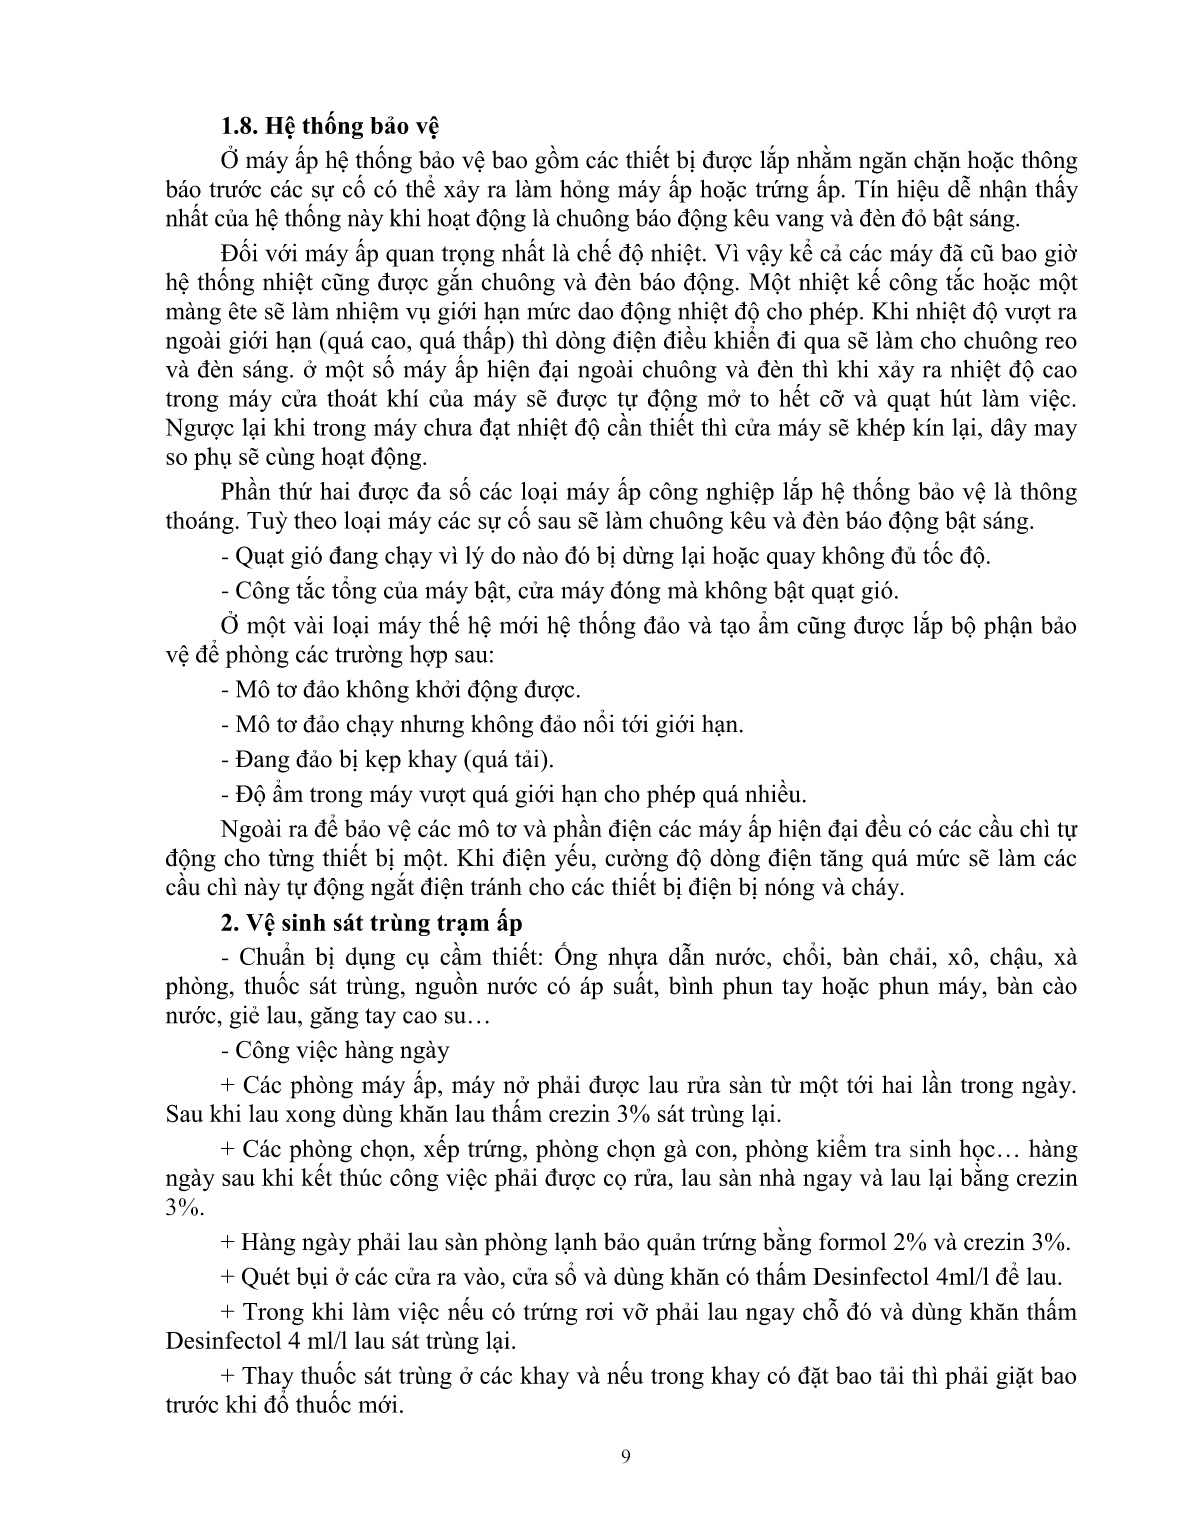 Giáo trình mô đun Ấp trứng gà (Trình độ: Đào tạo dưới 3 tháng) trang 10